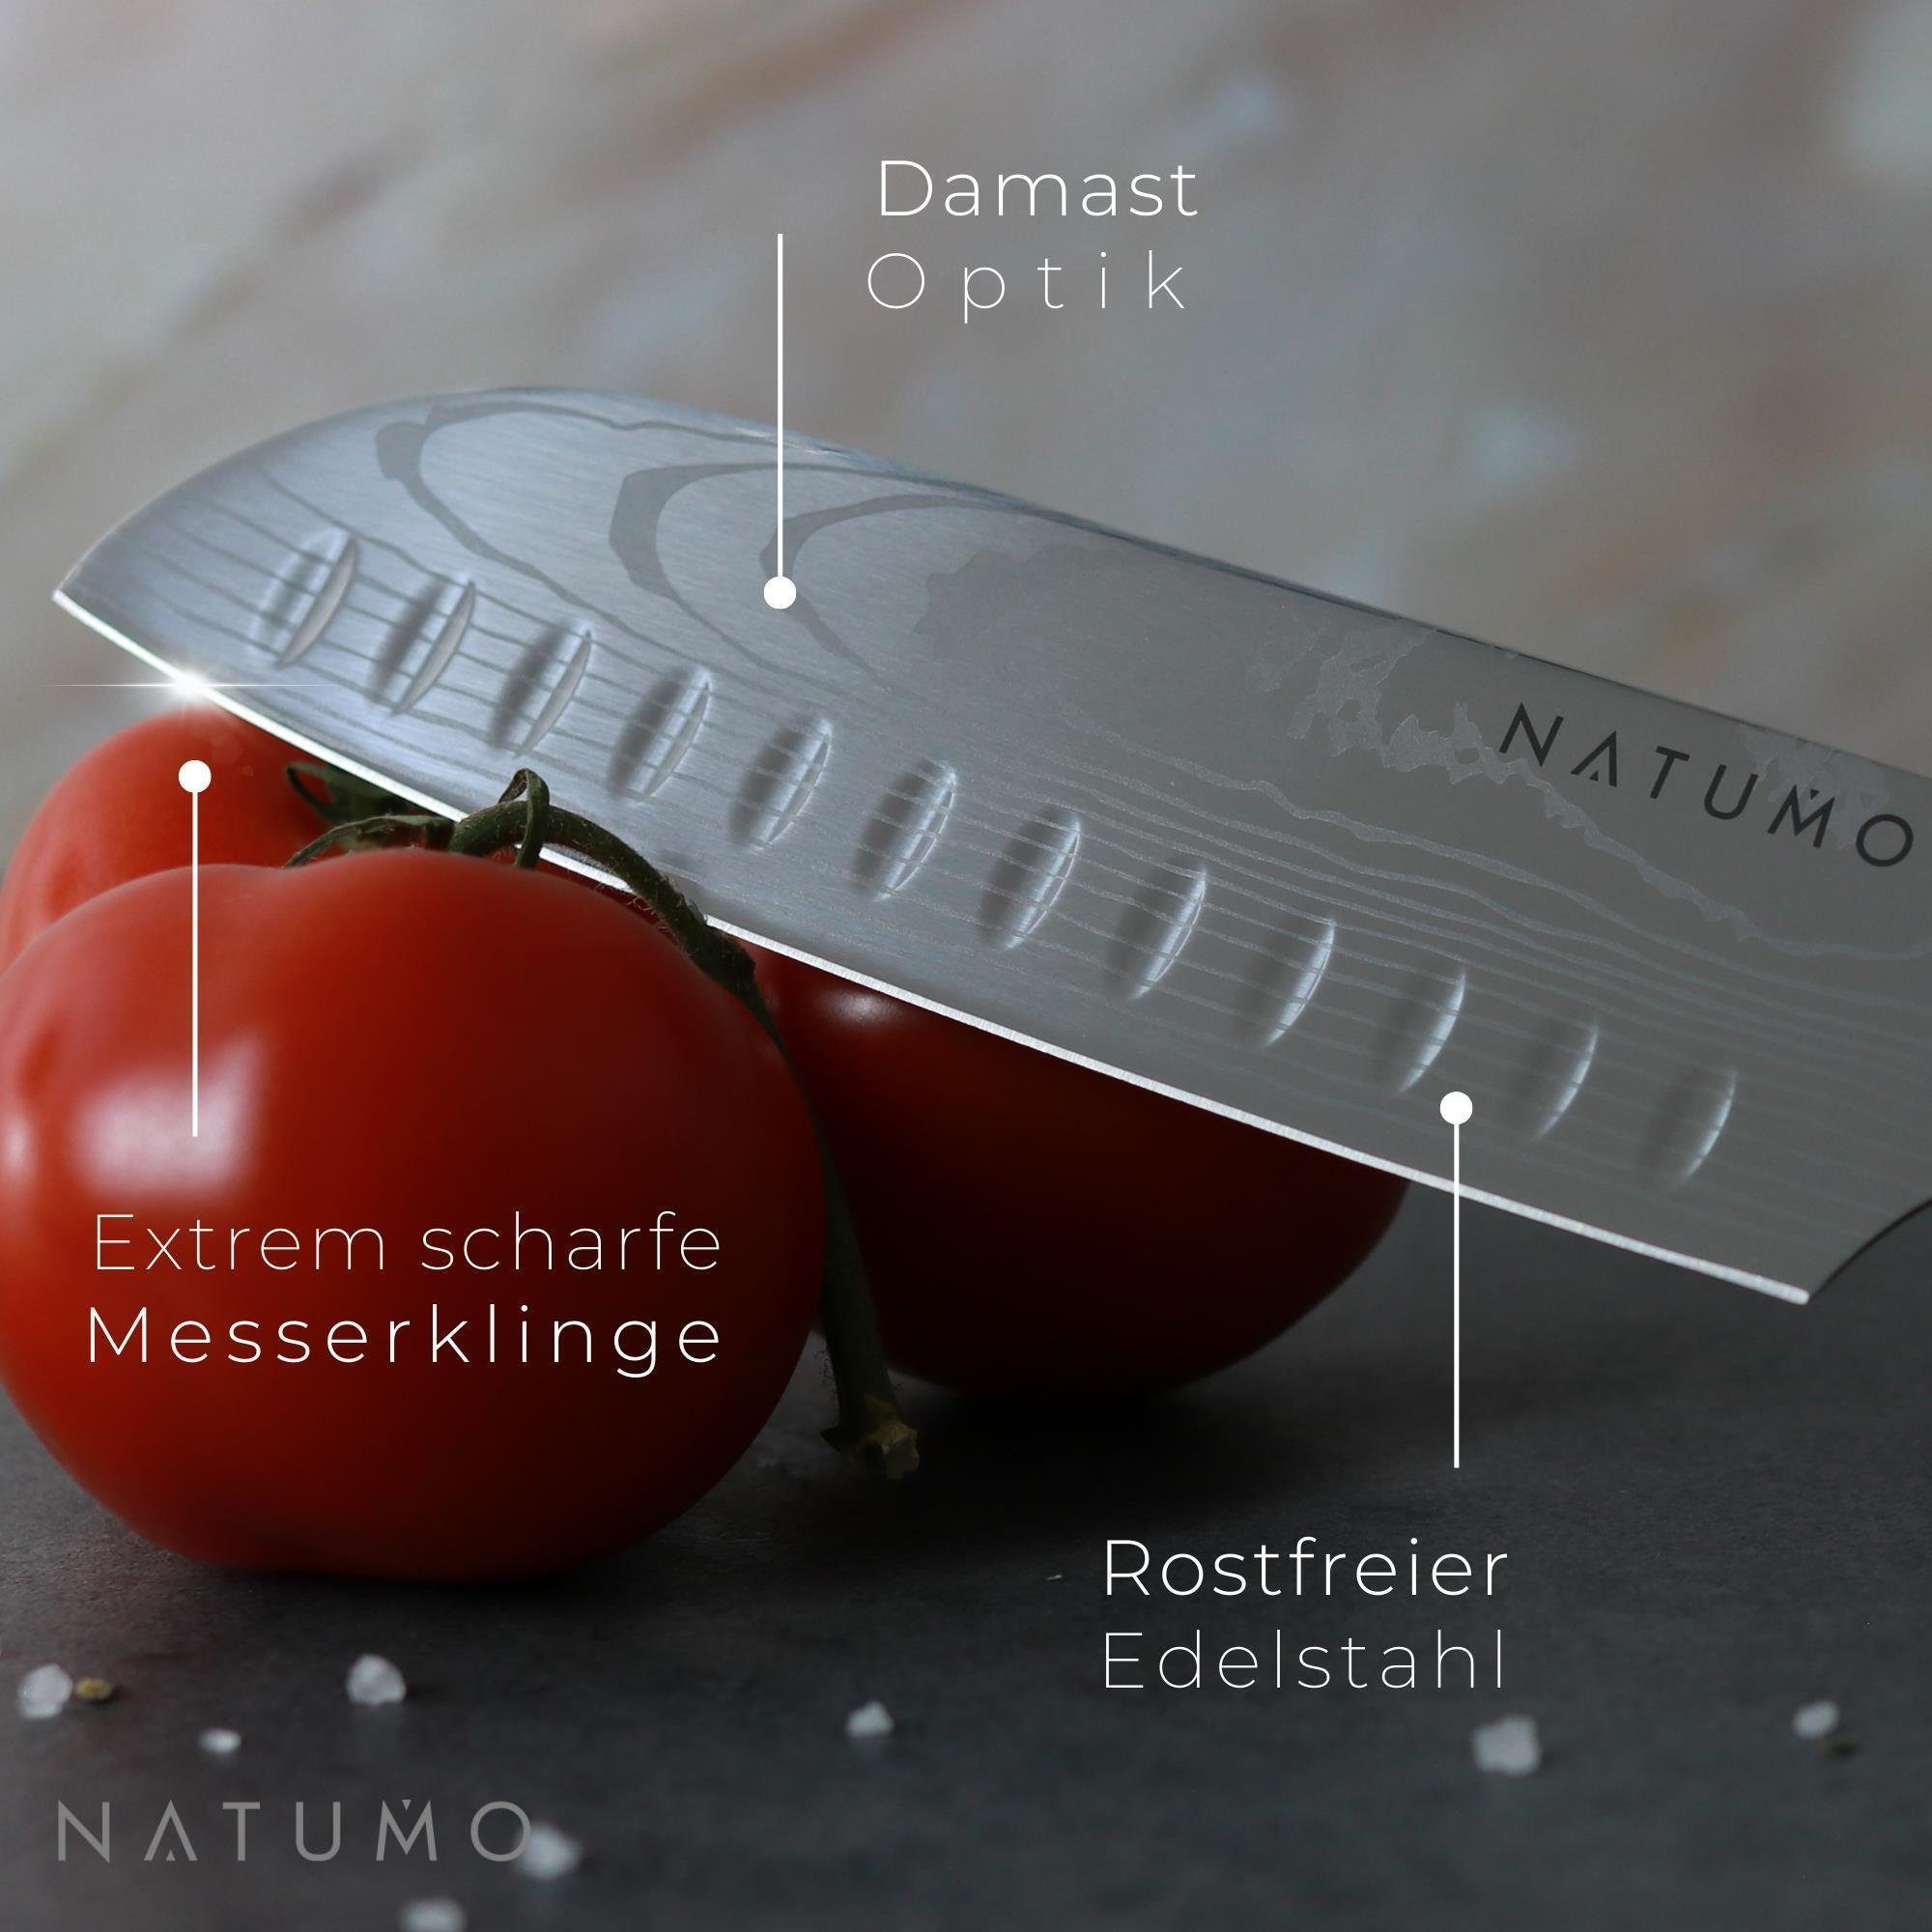 natumo Allzweckmesser NATUMO Küchenmesser Set in Messerset Grün HRC 9-teilig. Profi scharfes 56